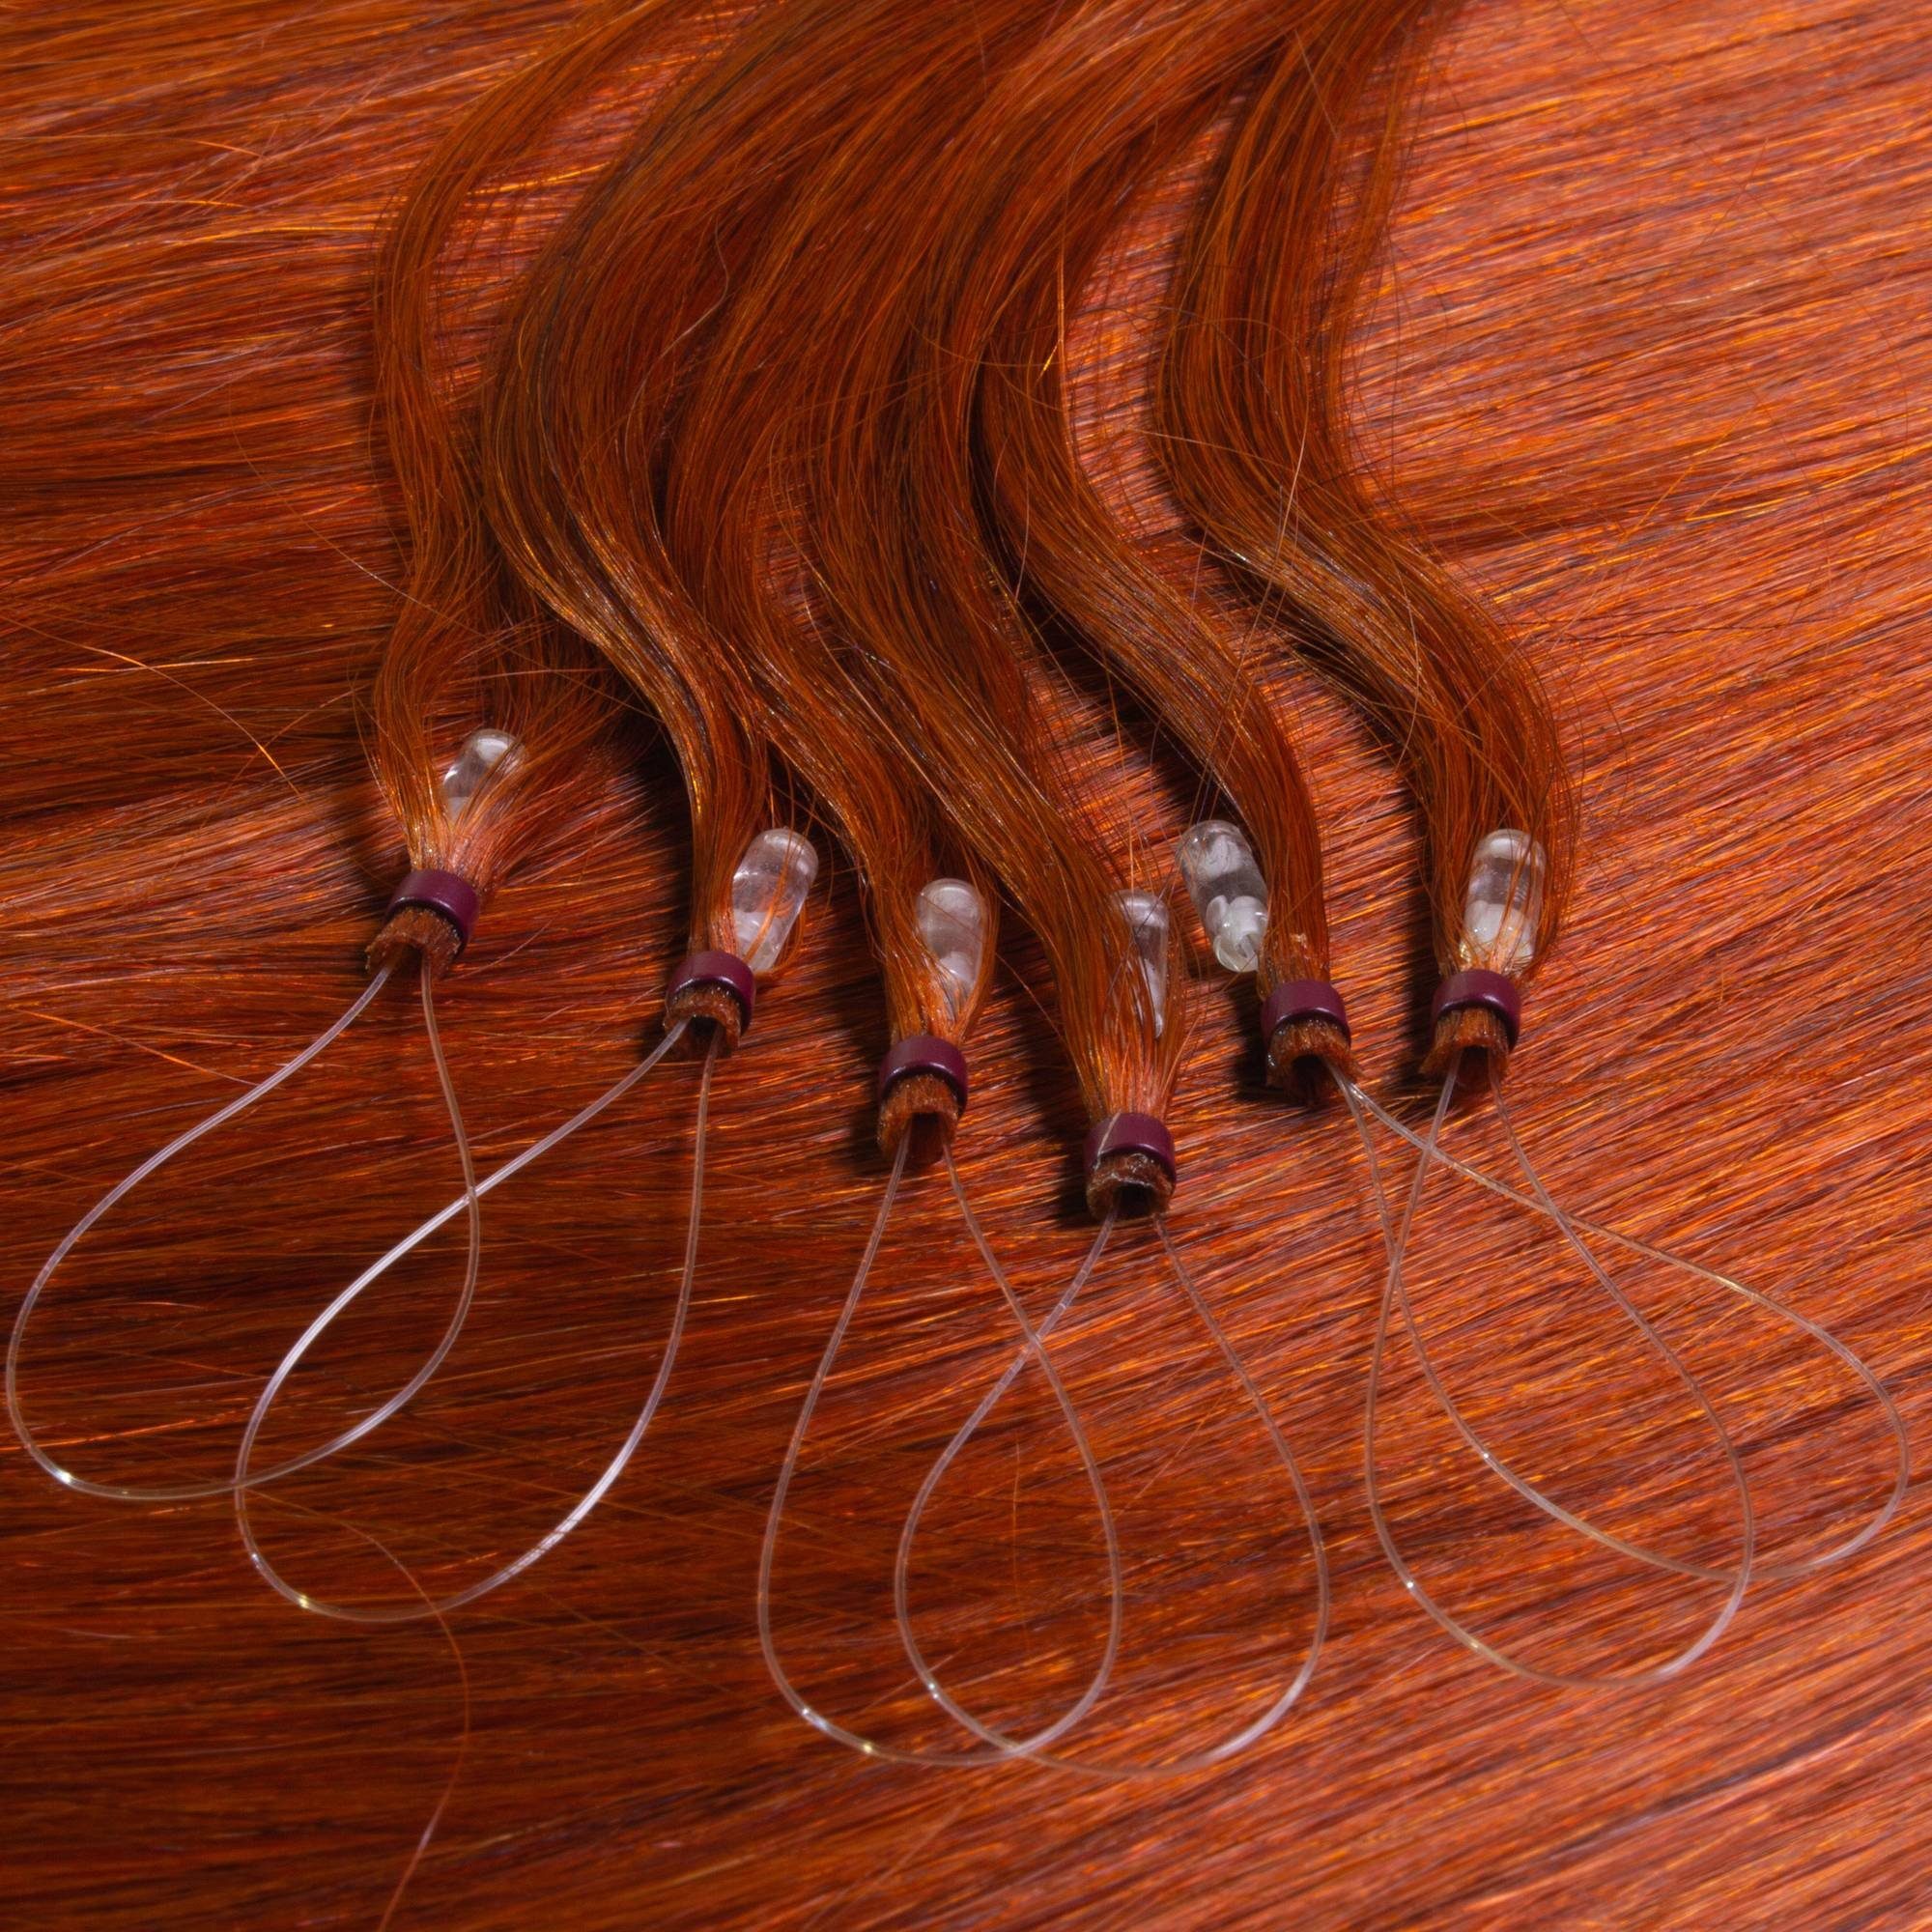 Extensions Microring Rot-Gold #8/43 Hellblond hair2heart 40cm Premium Echthaar-Extension